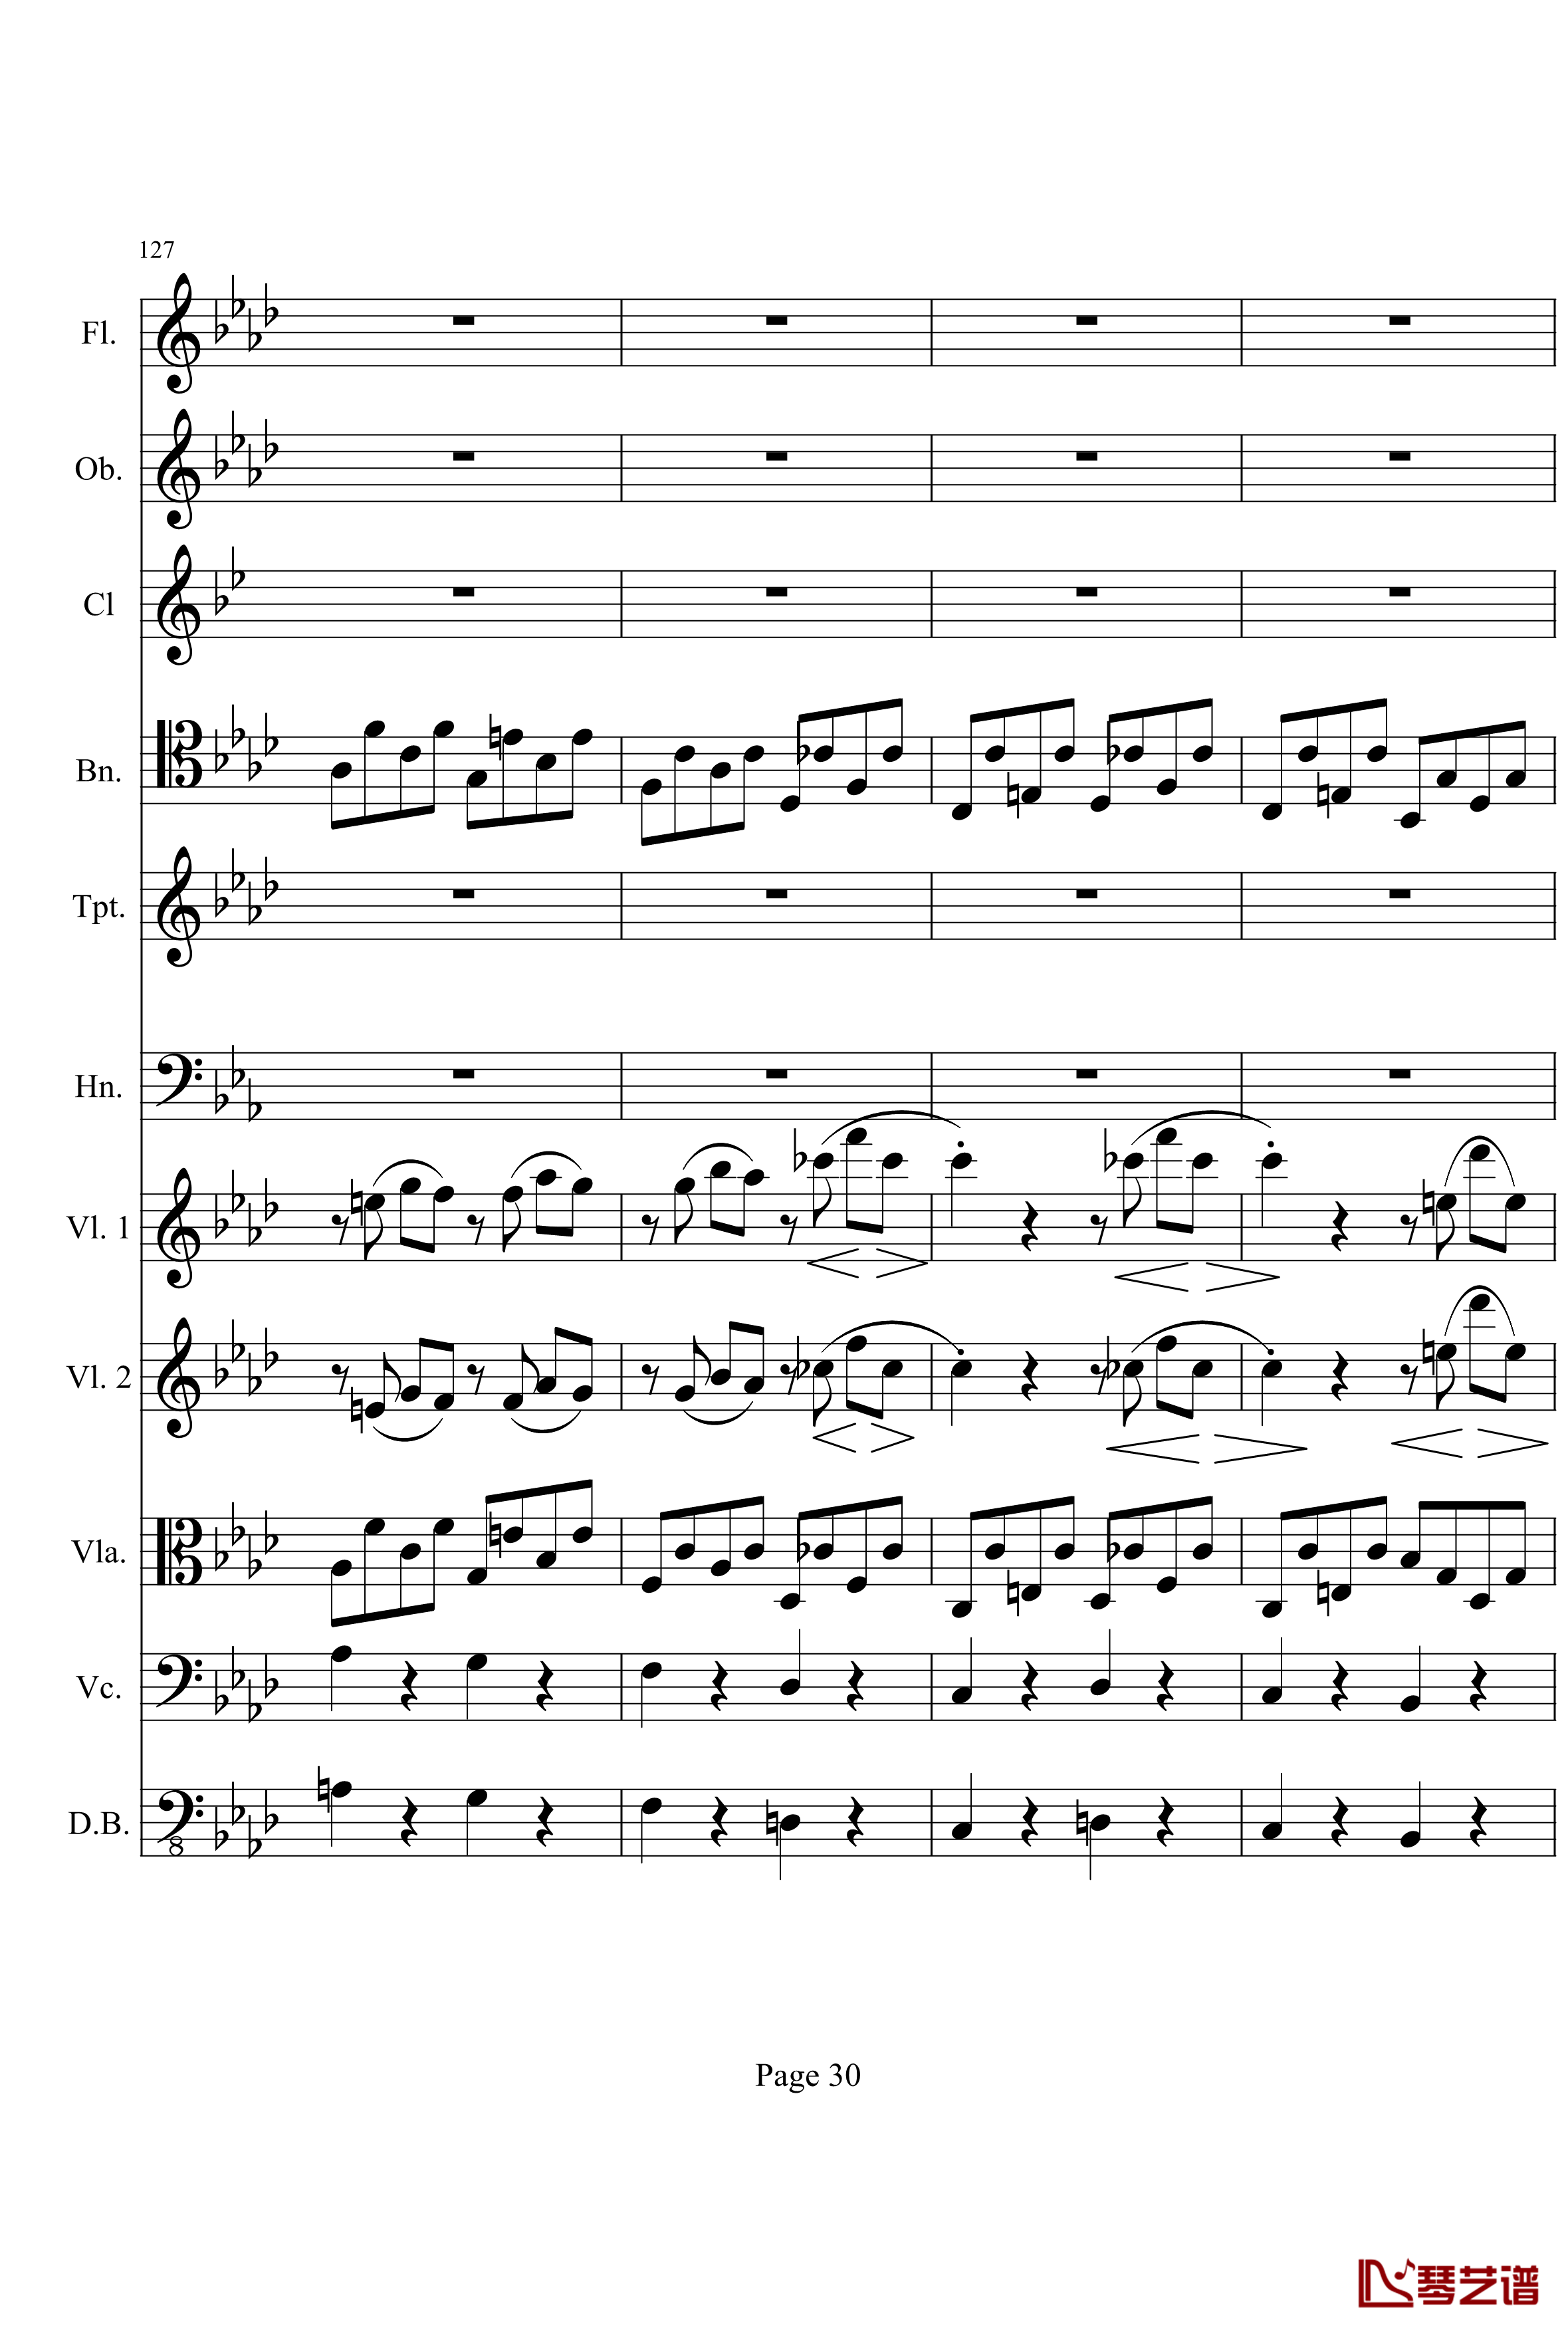 奏鸣曲之交响钢琴谱-第1首-Ⅰ-贝多芬-beethoven30